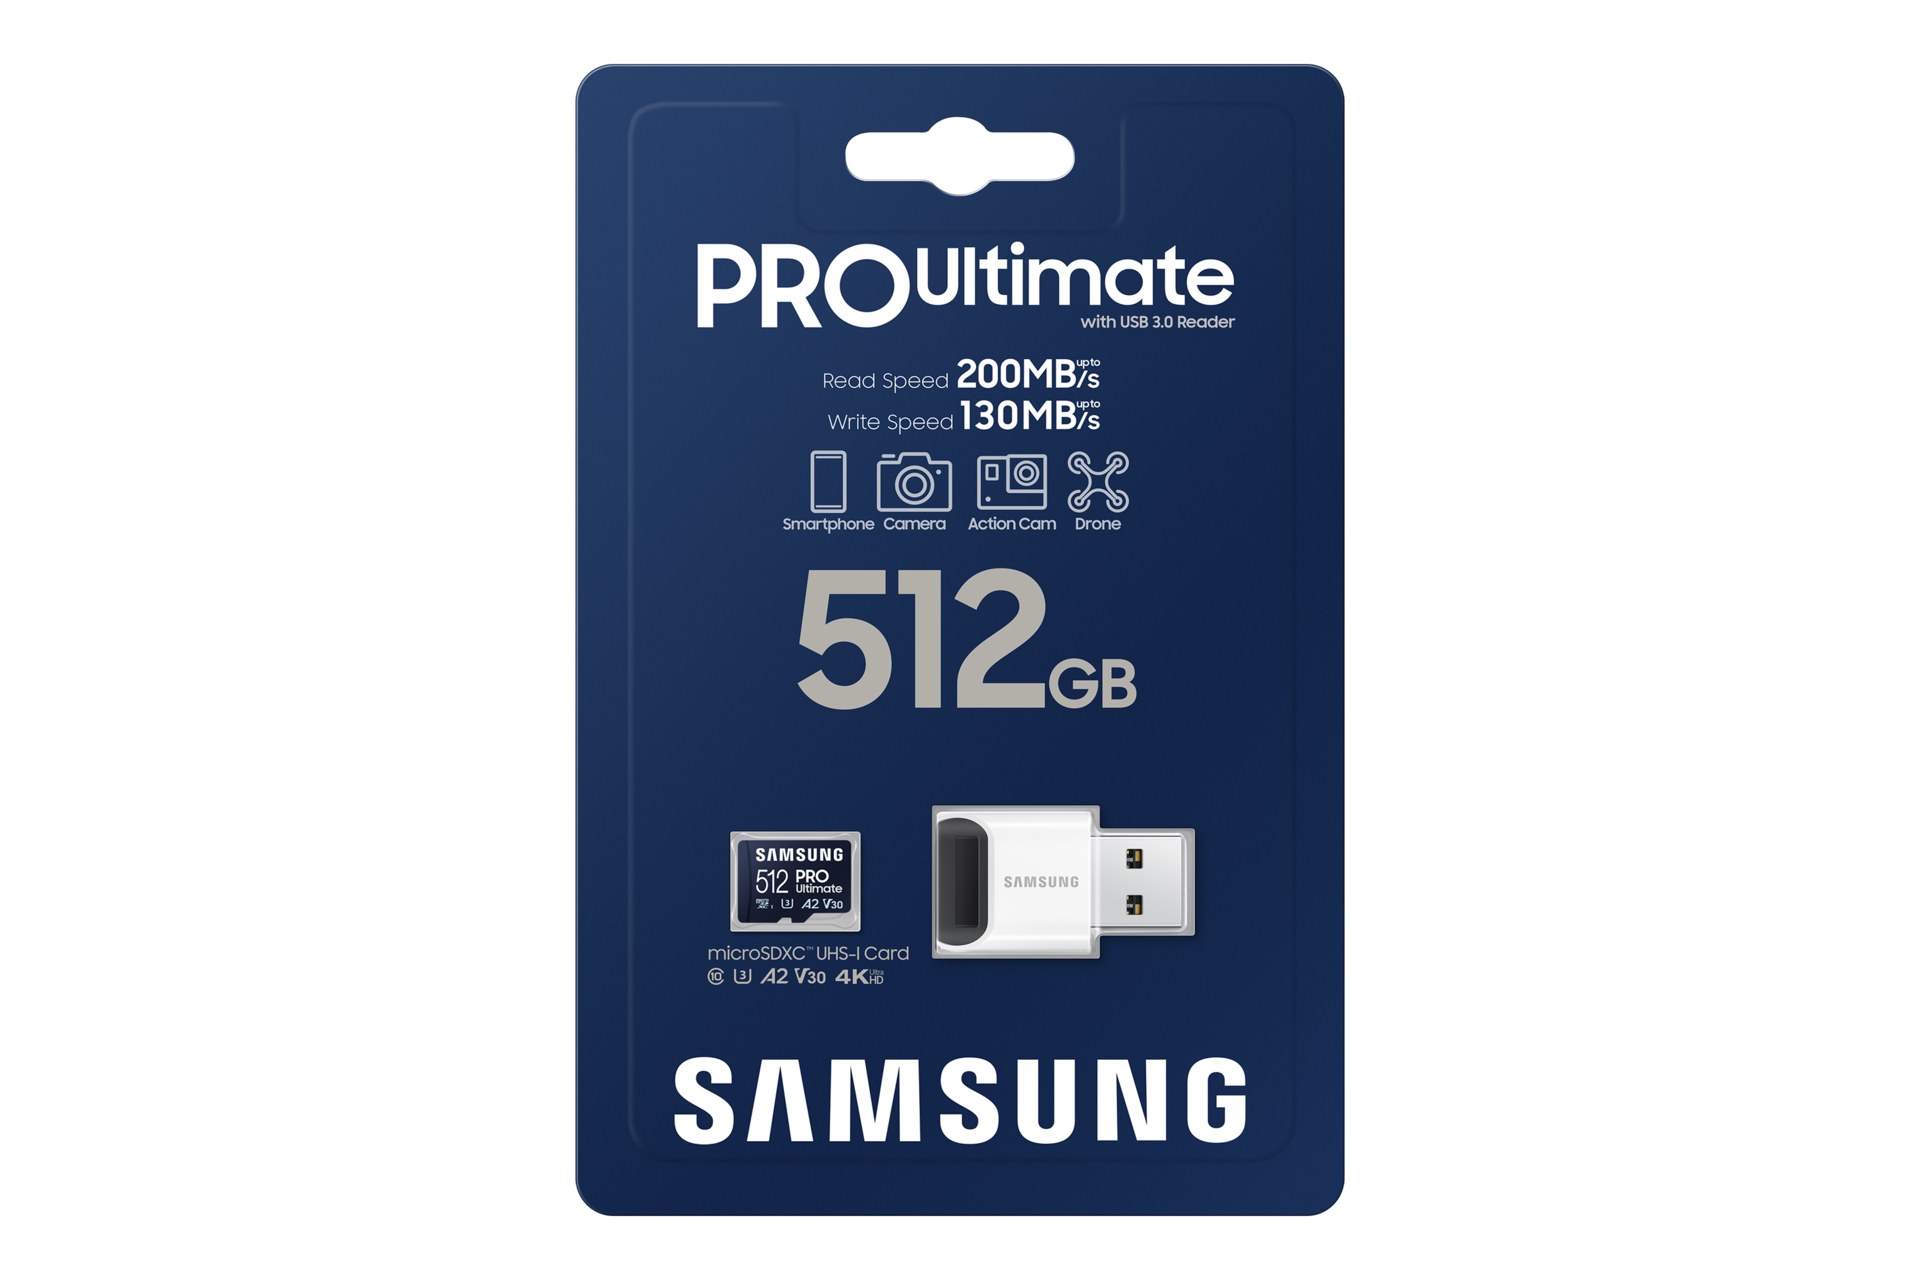 마이크로SD 메모리카드 PRO Ultimate with Card Reader 512 GB 제품 상자 정면 이미지